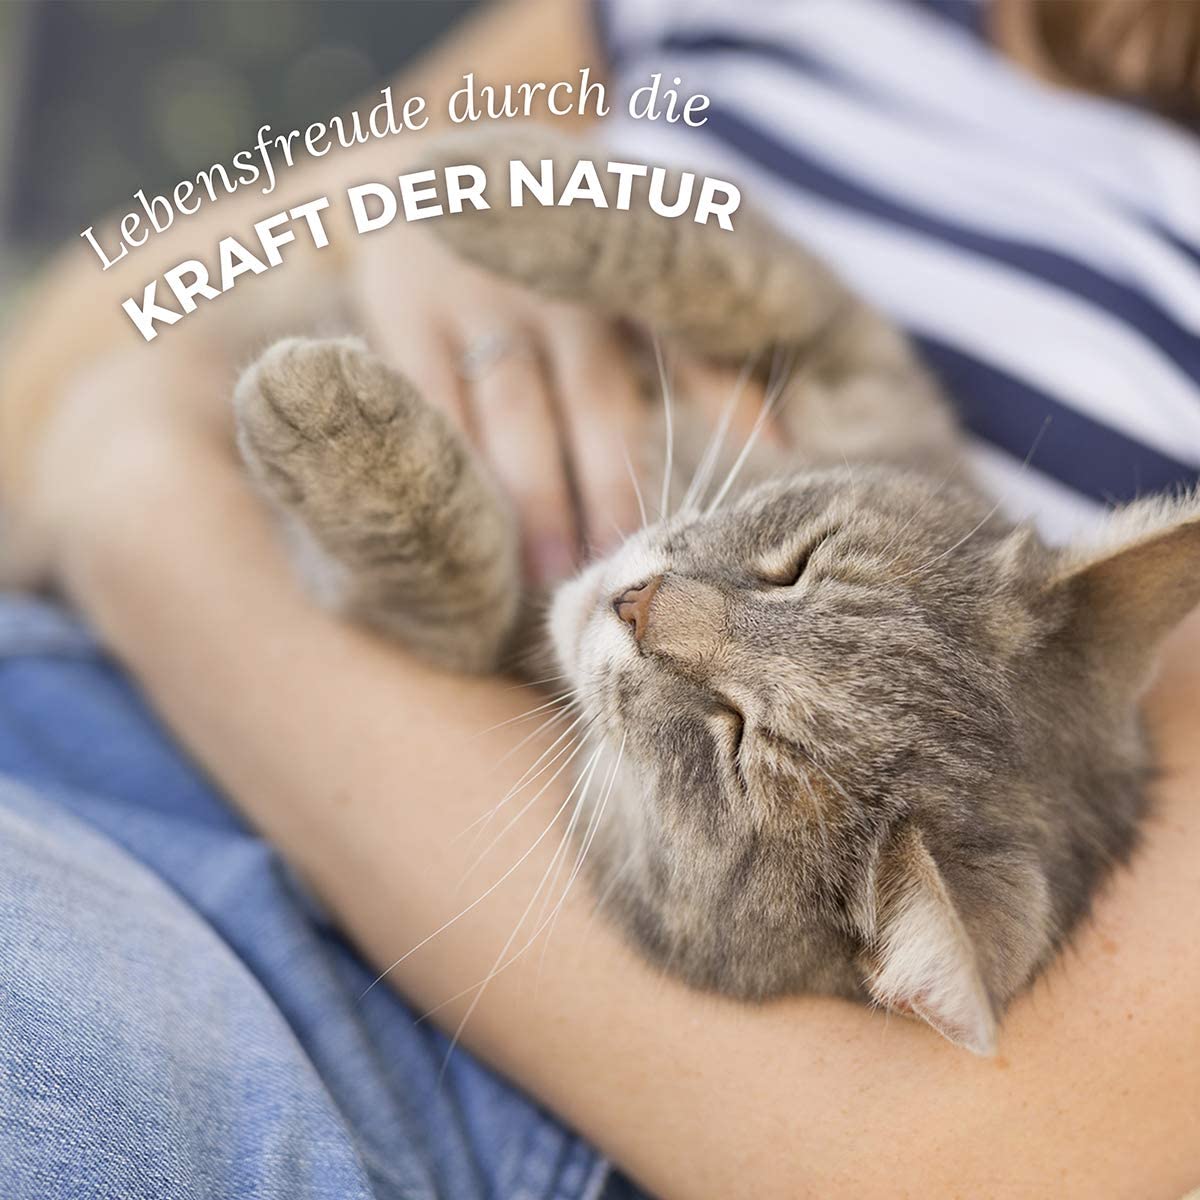  AniForte WermiX en polvo para gatos 25g - producto natural para antes, durante y después de la infestación de gusanos, el ajenjo y las hierbas naturales ayudan al estómago y el intestino 